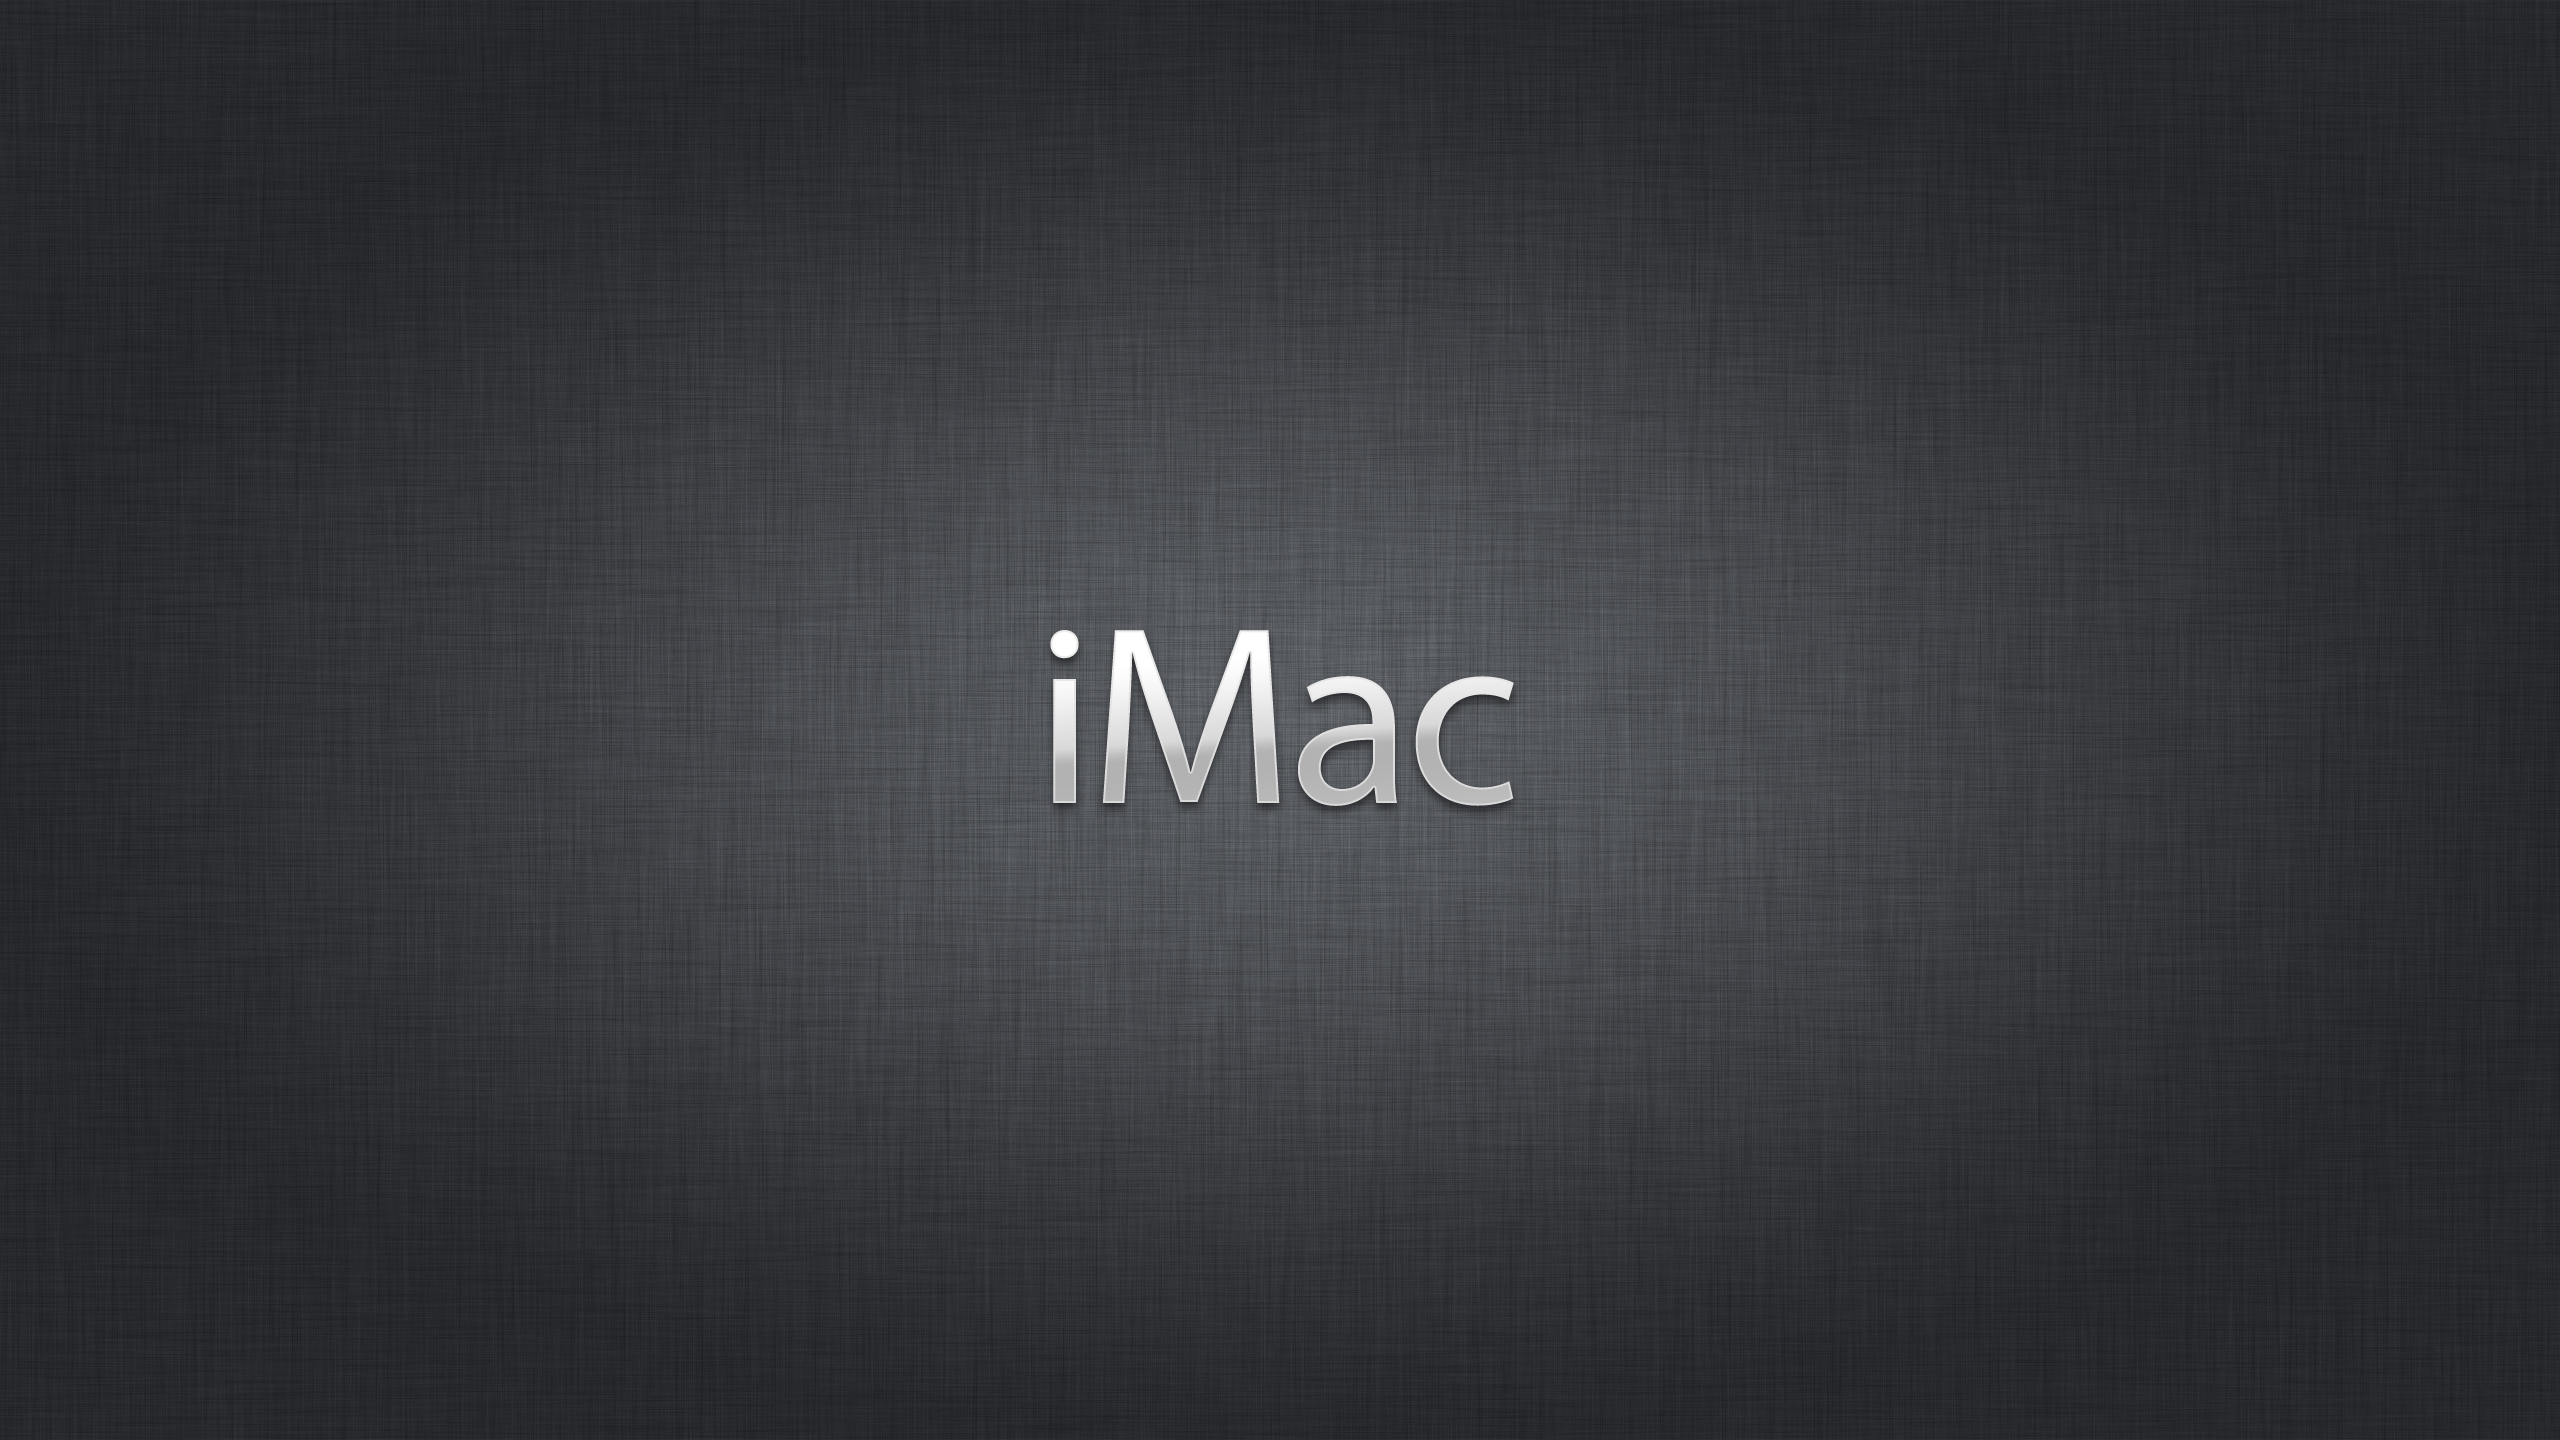 IPHONE IMAC MACBOOK PRO MACBOOK AIR NAMES WALLPAPERS Inch iMac